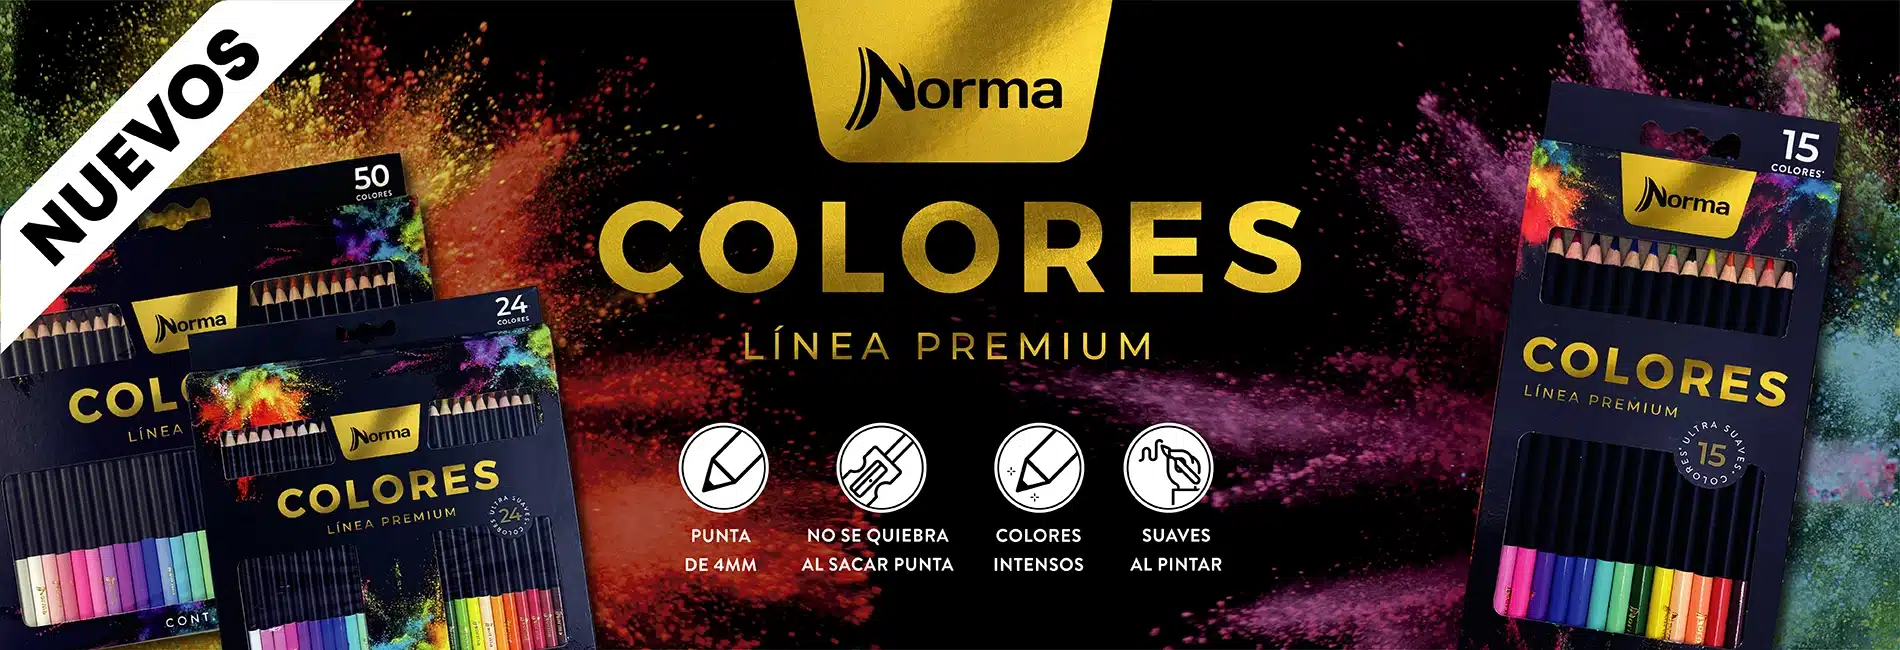 Norma - Colores Premium